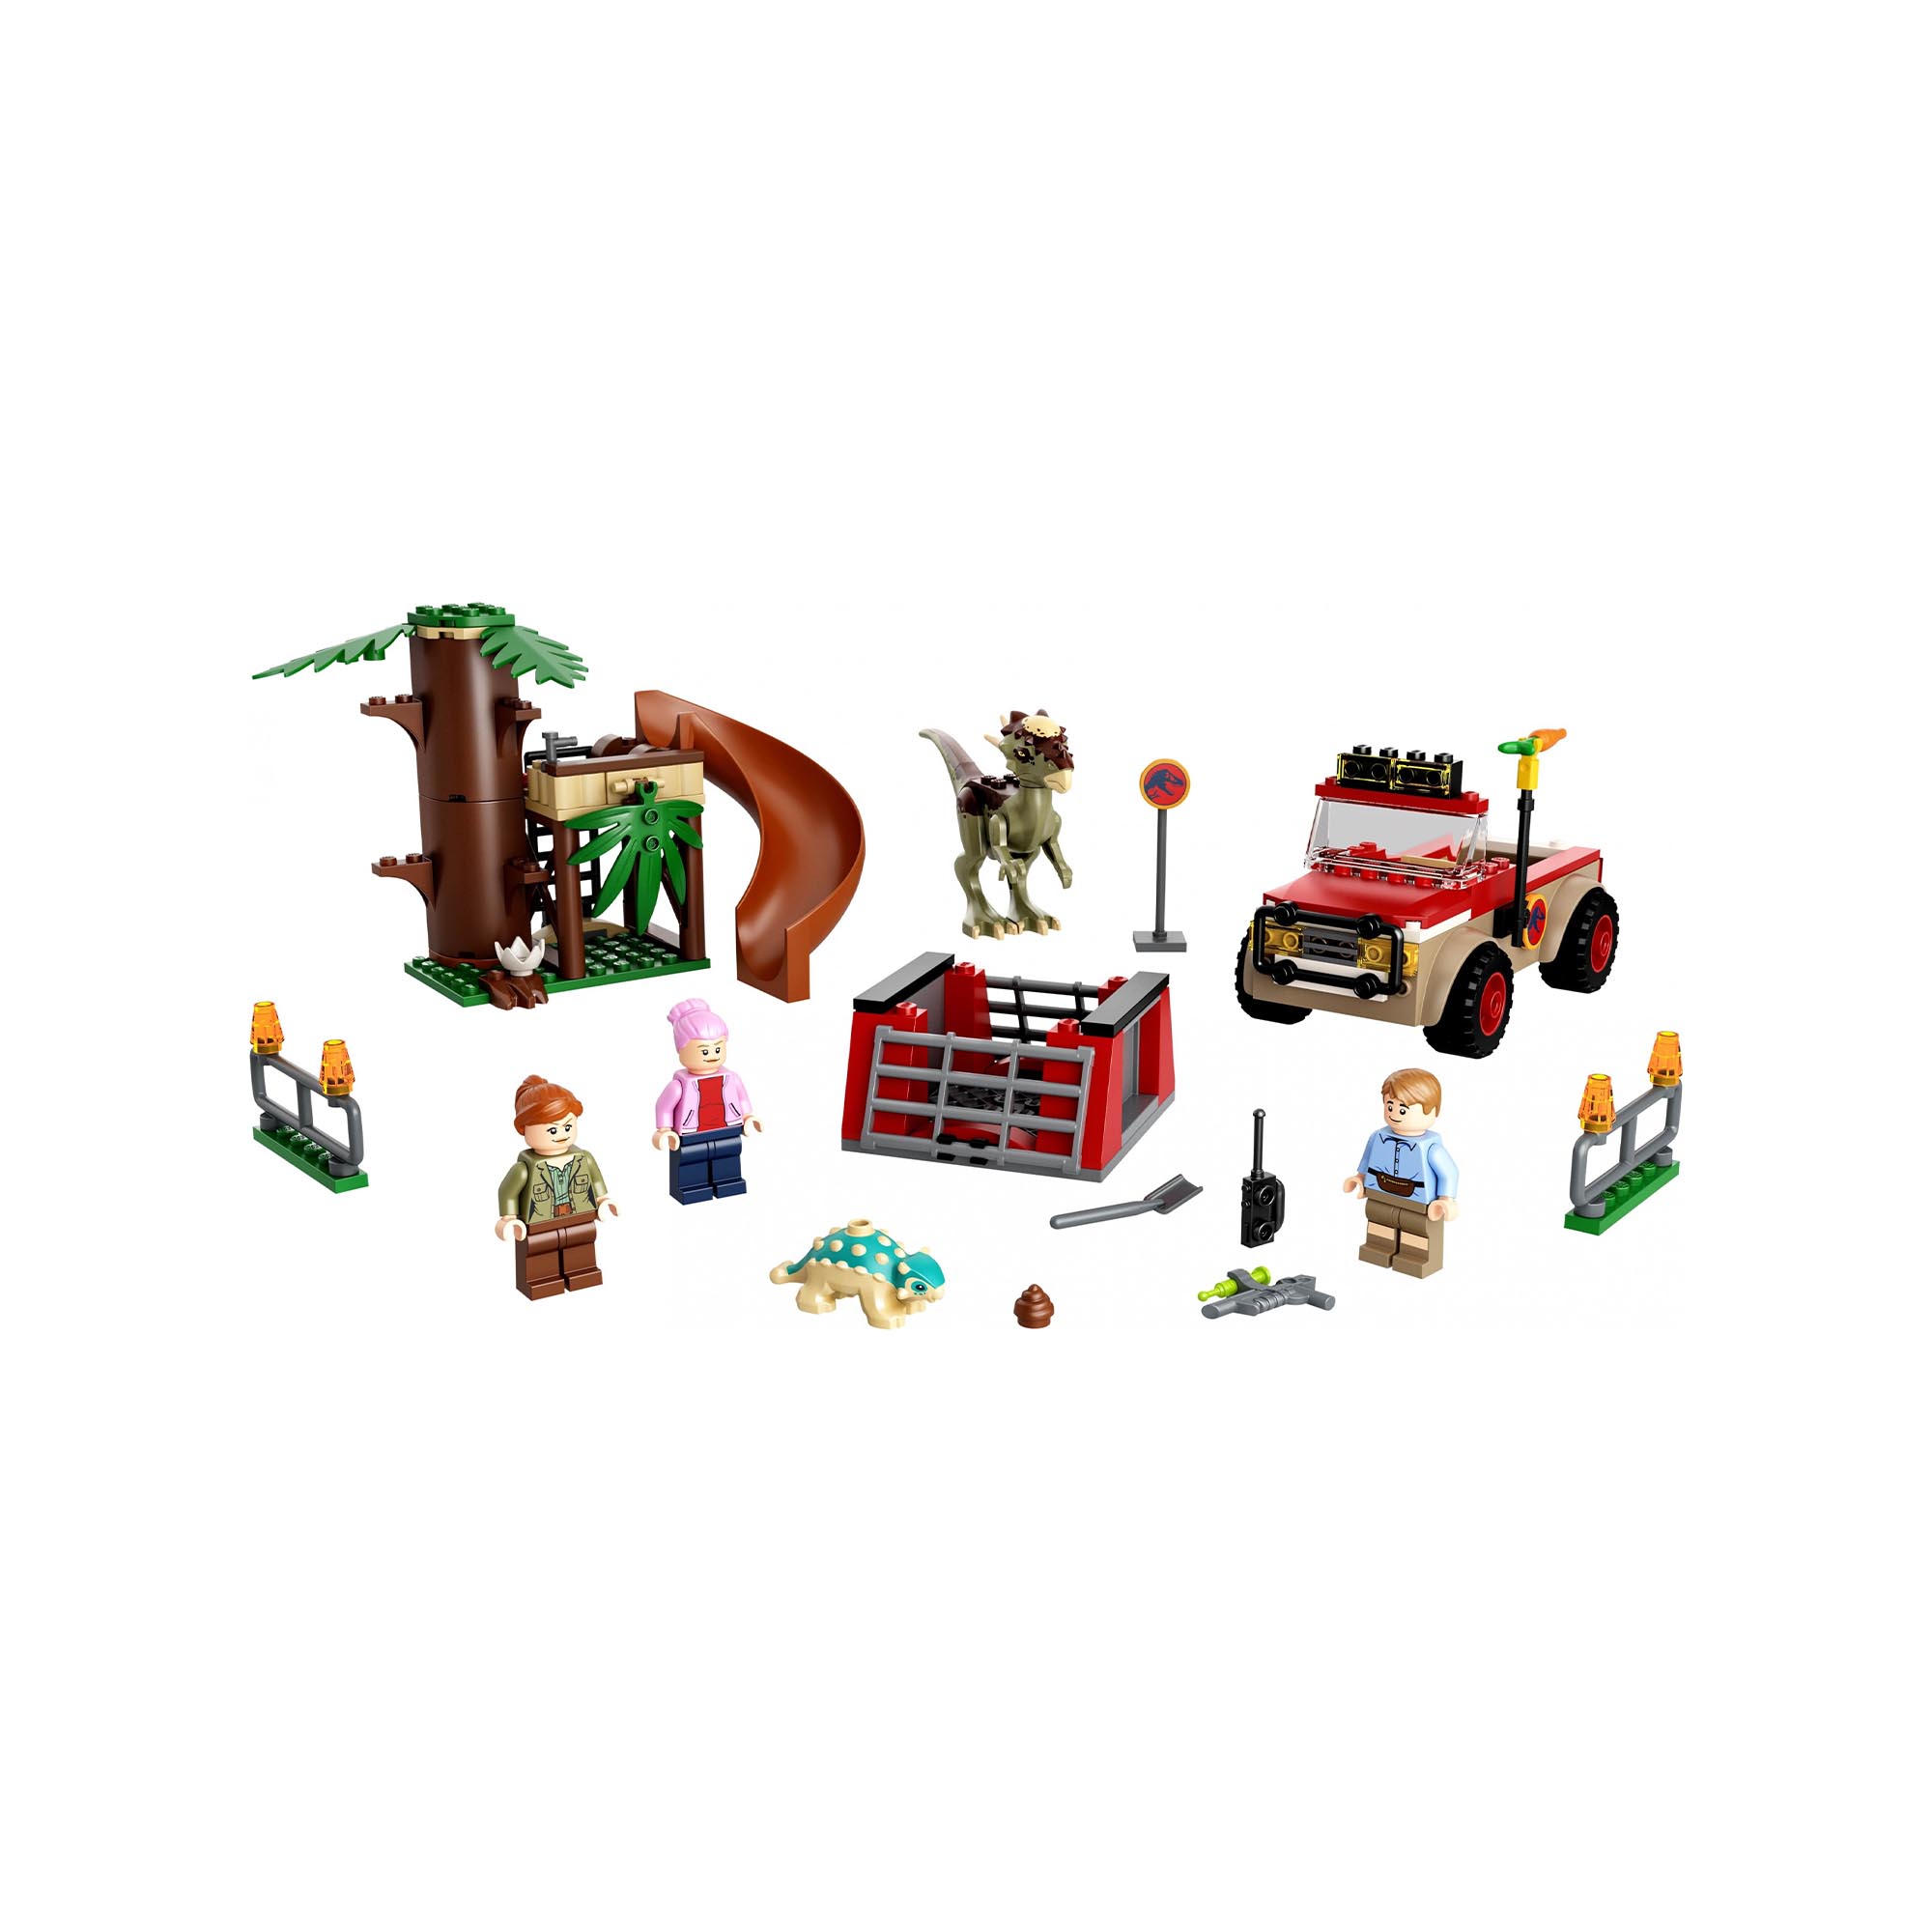 LEGO Jurassic World La Fuga del Dinosauro Stygimoloch, Giochi per Bambini di 4 A 76939, , large